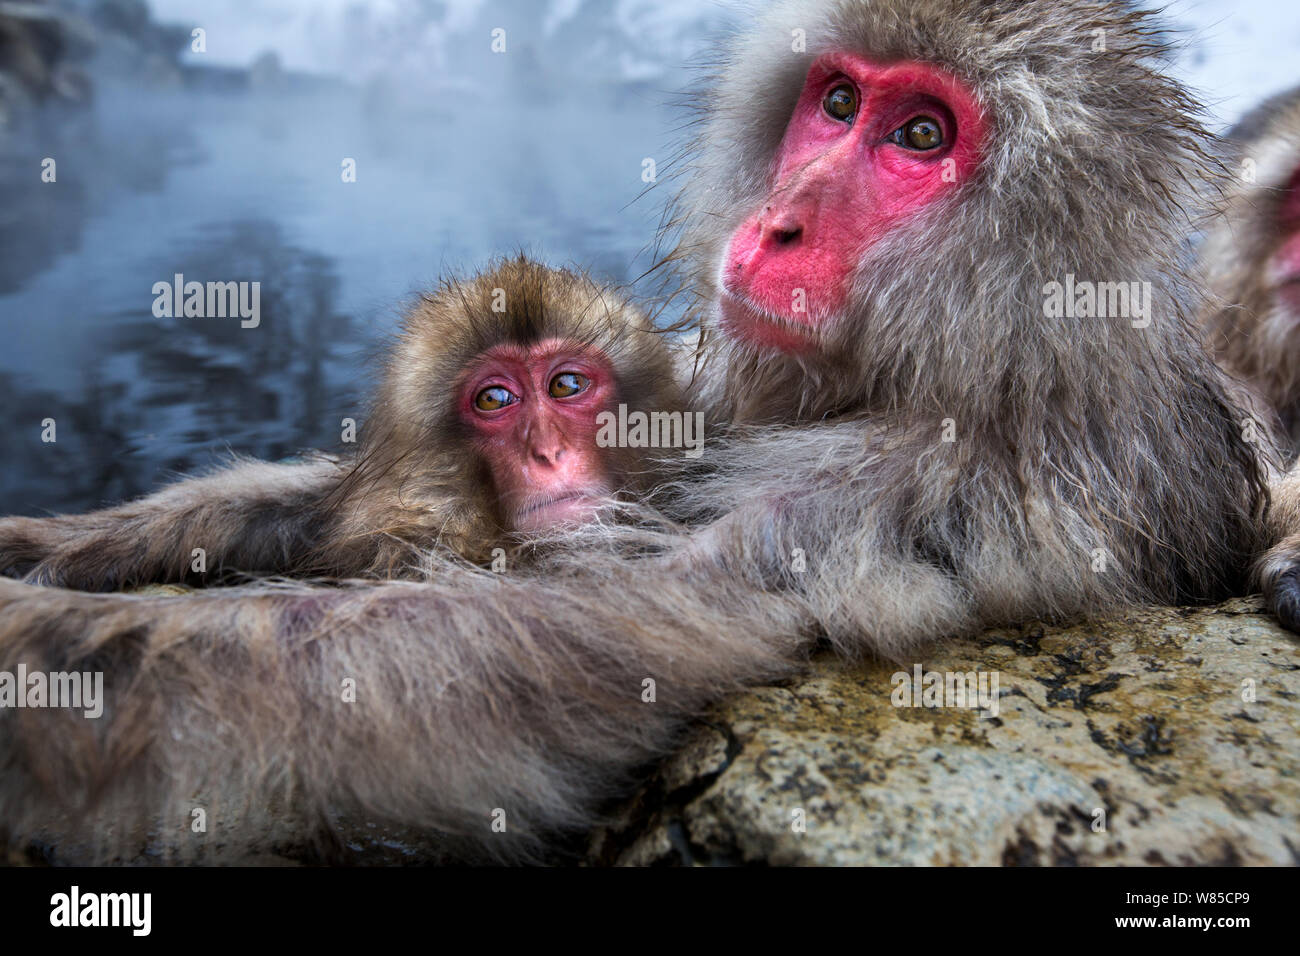 Japanischen Makaken (Macaca fuscata) weiblich und ihr Baby entspannen am Rand der thermischen Hotspring Pool. Jigokudani Yean-Koen Nationalpark, Japan, Februar. Stockfoto